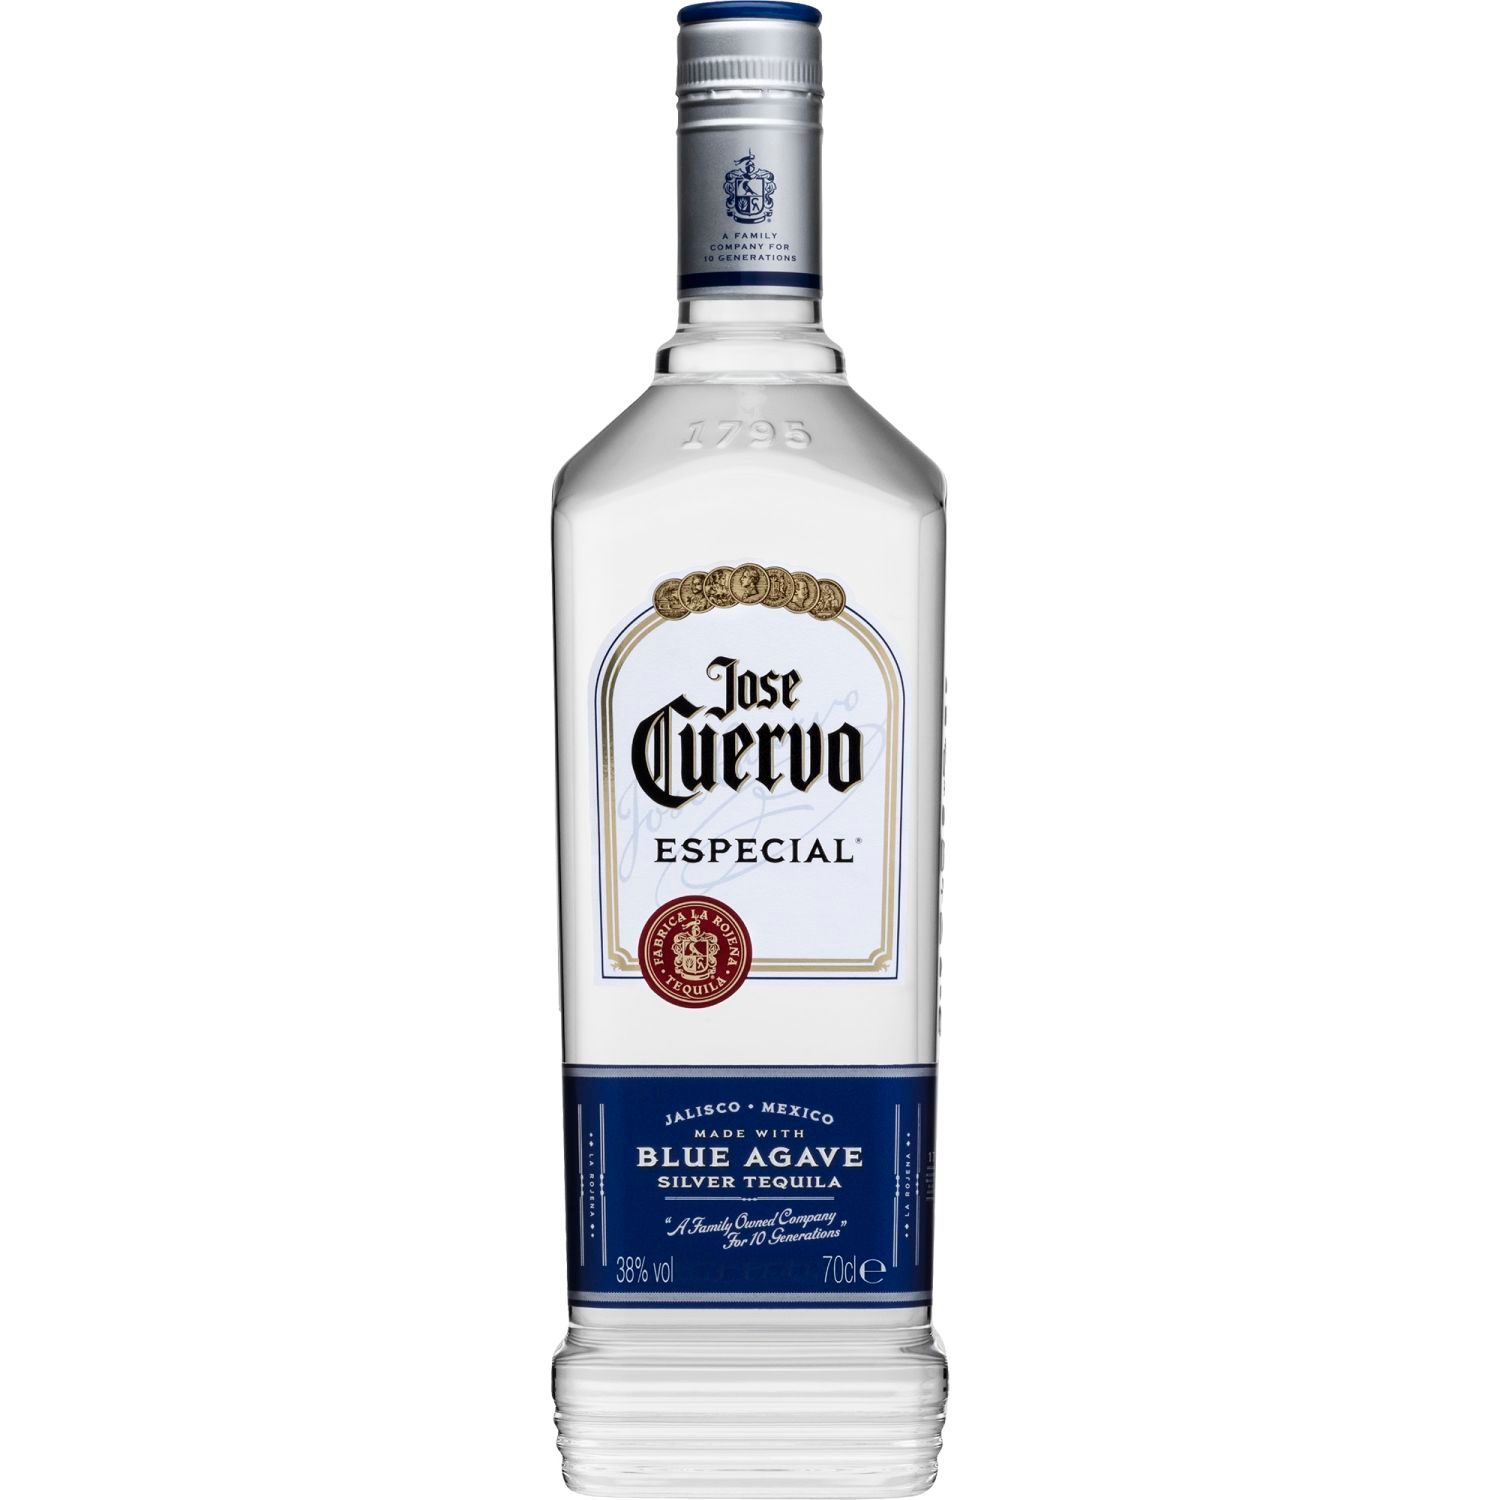 Jose Cuervo Especial Silver Tequila 700mL<br /> <br />Alcohol Volume: 38.00%<br /><br />Pack Format: Bottle<br /><br />Standard Drinks: 21</br /><br />Pack Type: Bottle<br />